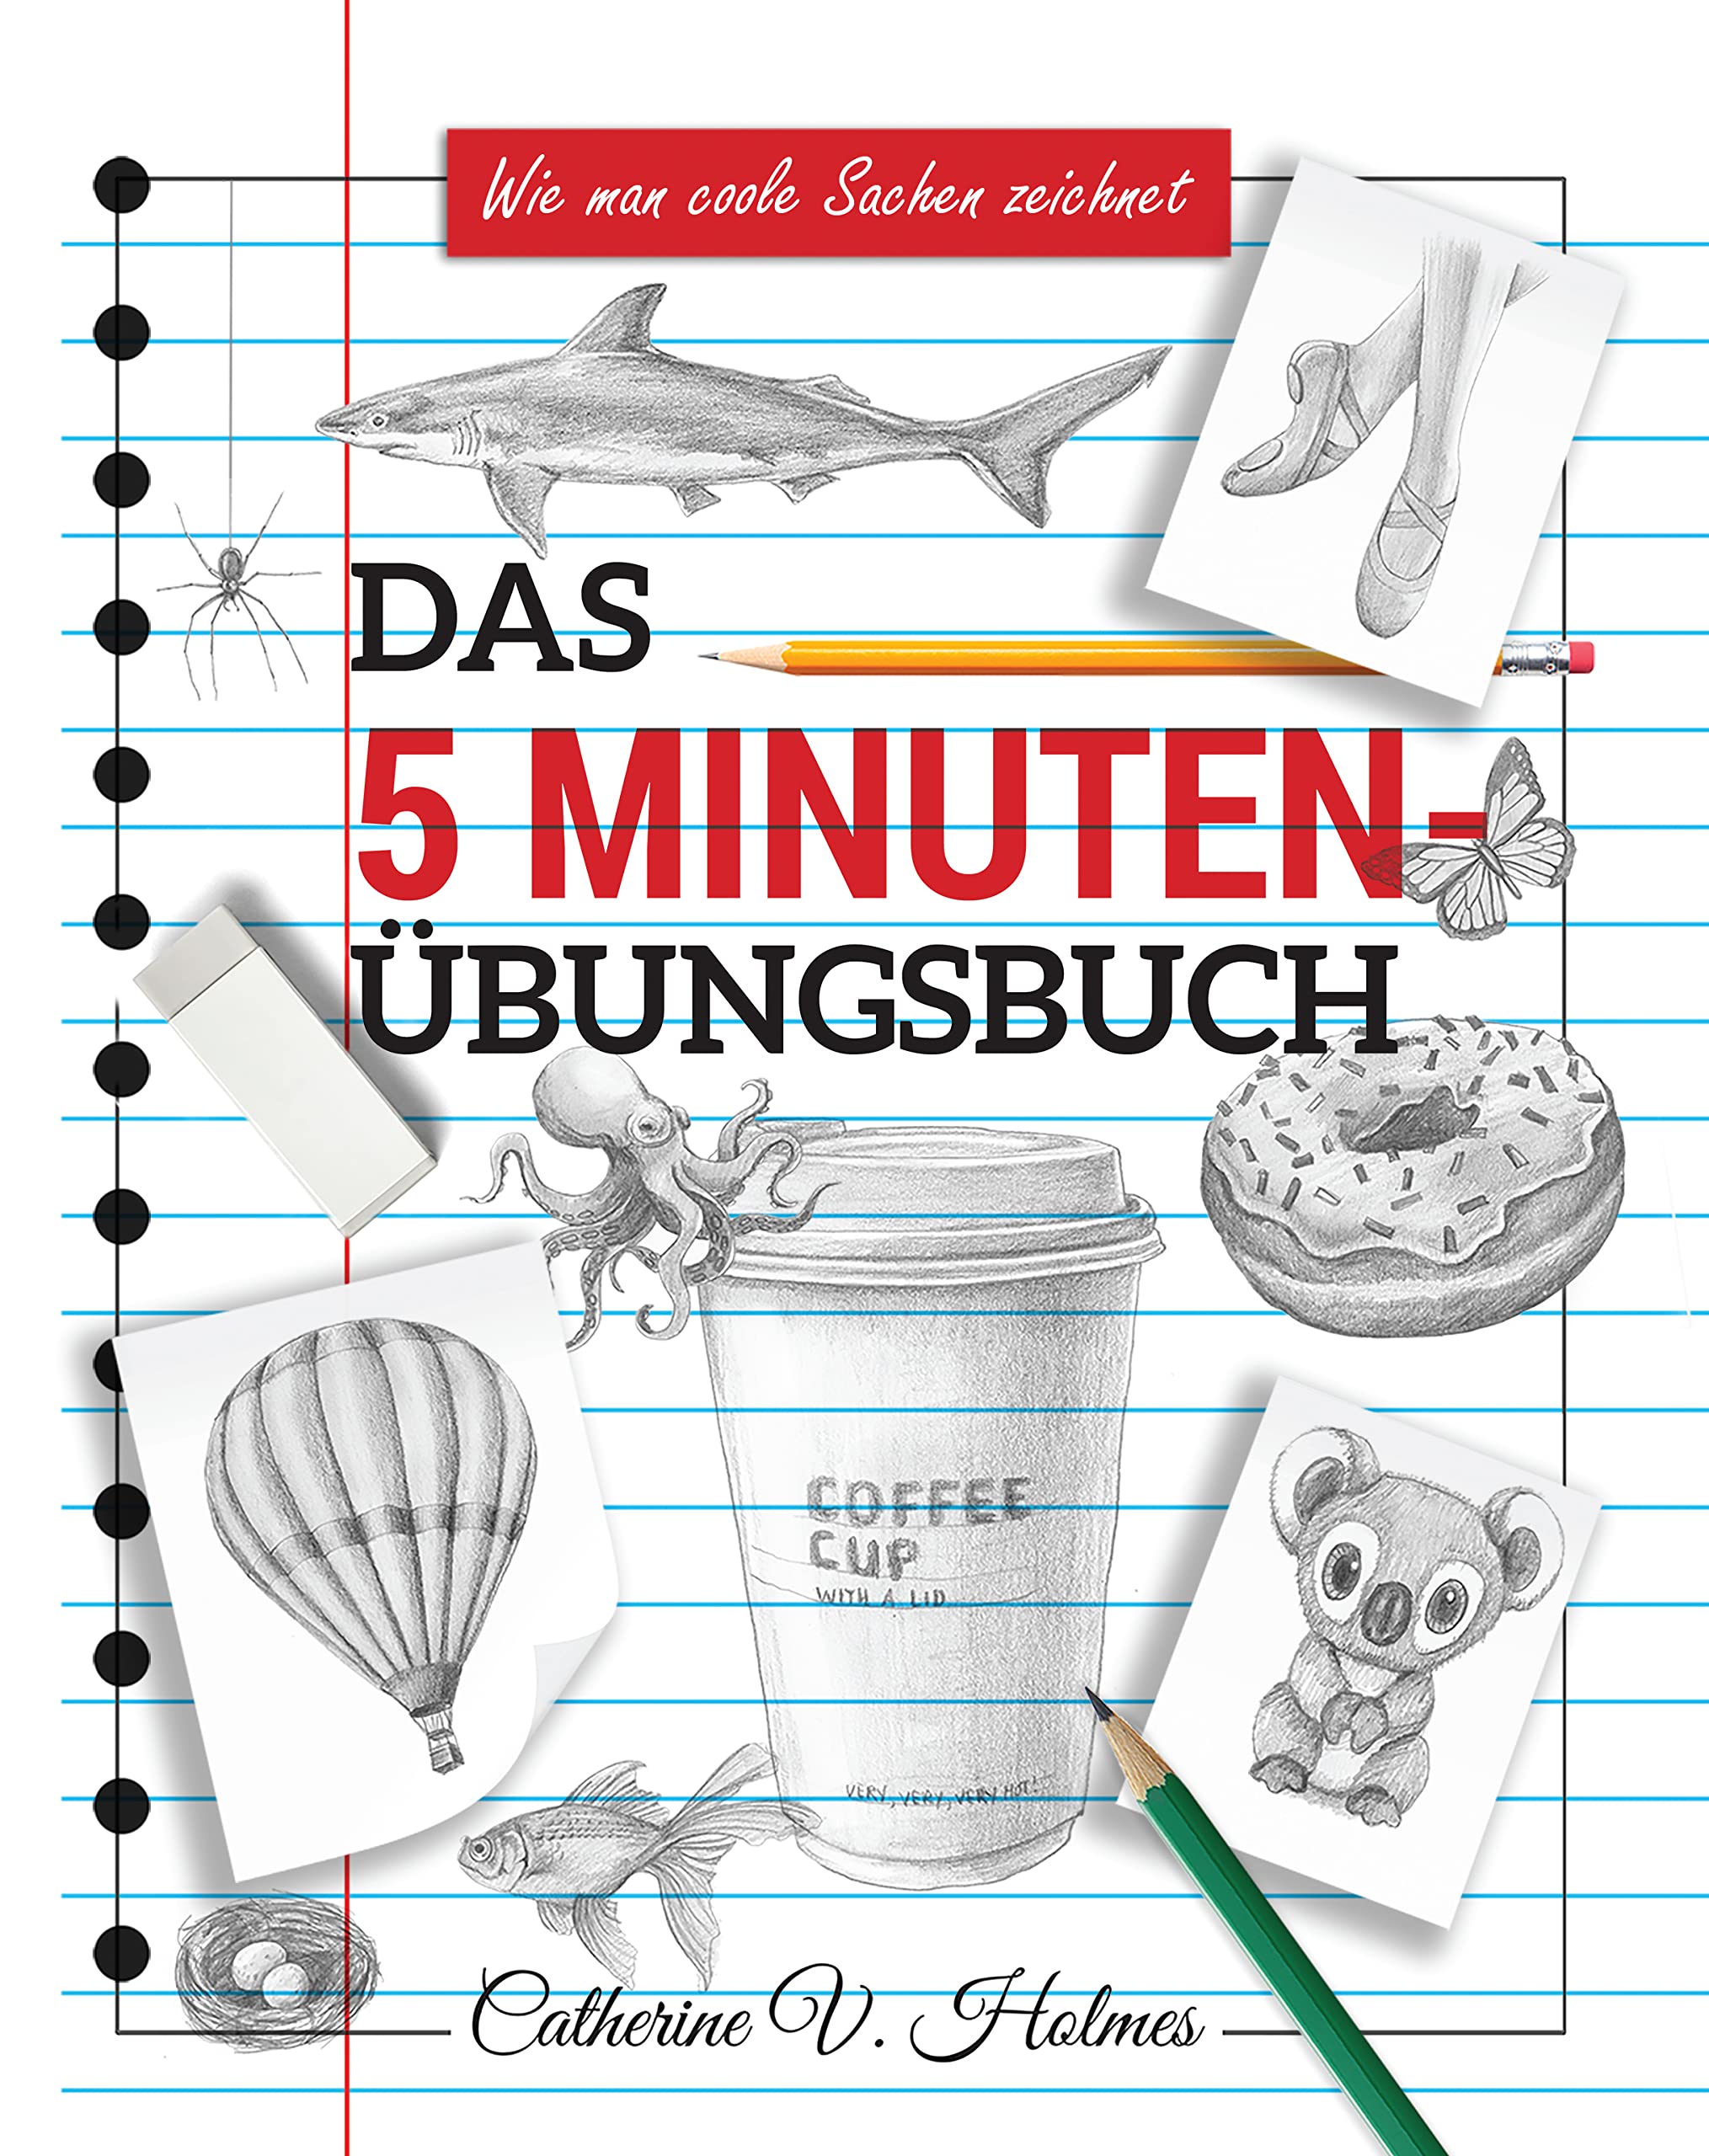 Das 5-minuten übungsbuch: Schritt-für-Schritt-Lektionen zum schnellen Zeichnen cooler Objekte (Wie man coole Sachen zeichnet 3) (German Edition)